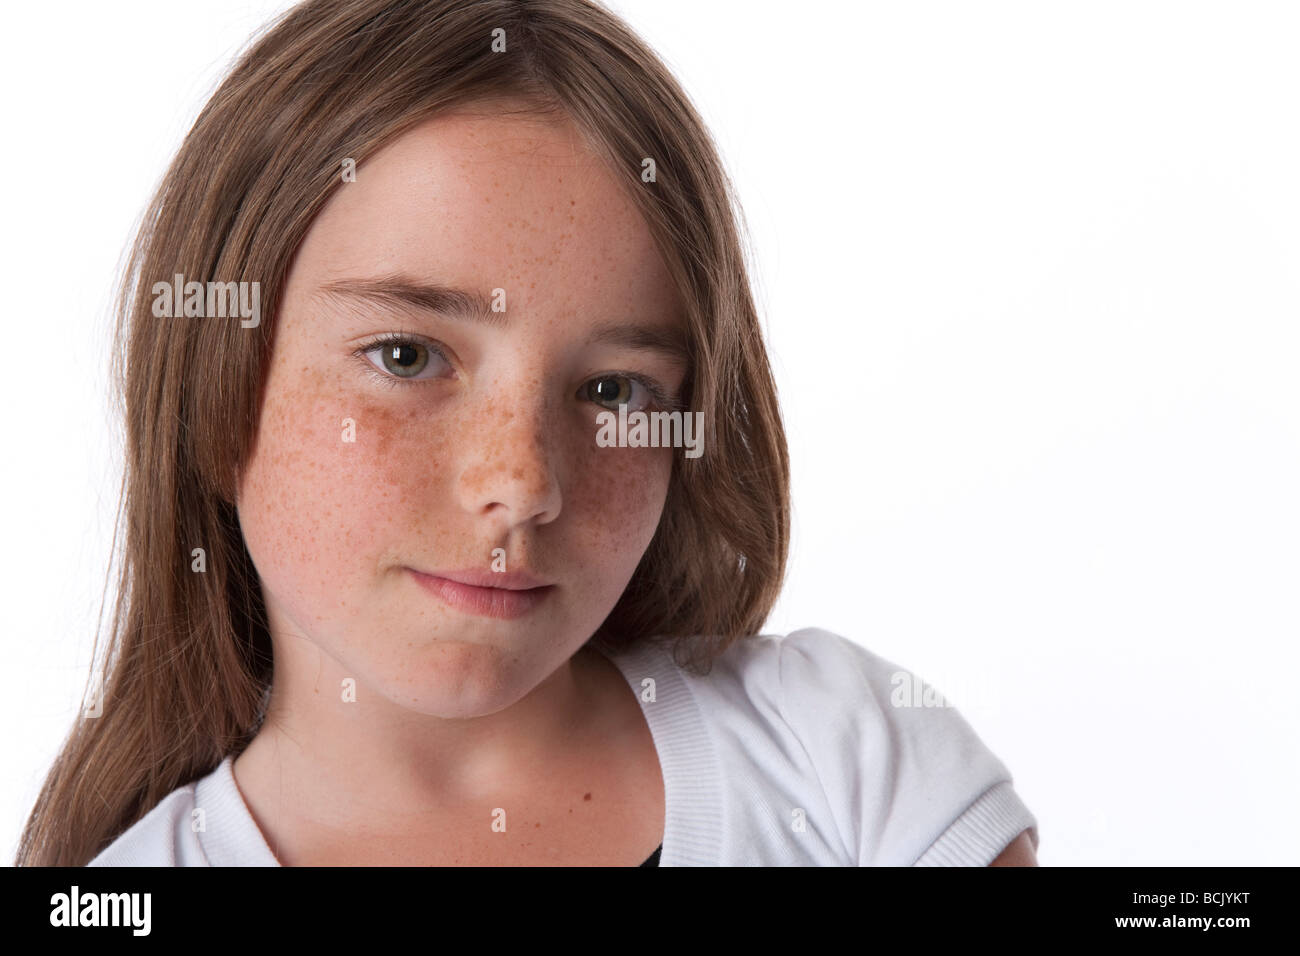 Porträt eines kühlen 10 Jahre alten Mädchens Stockfoto